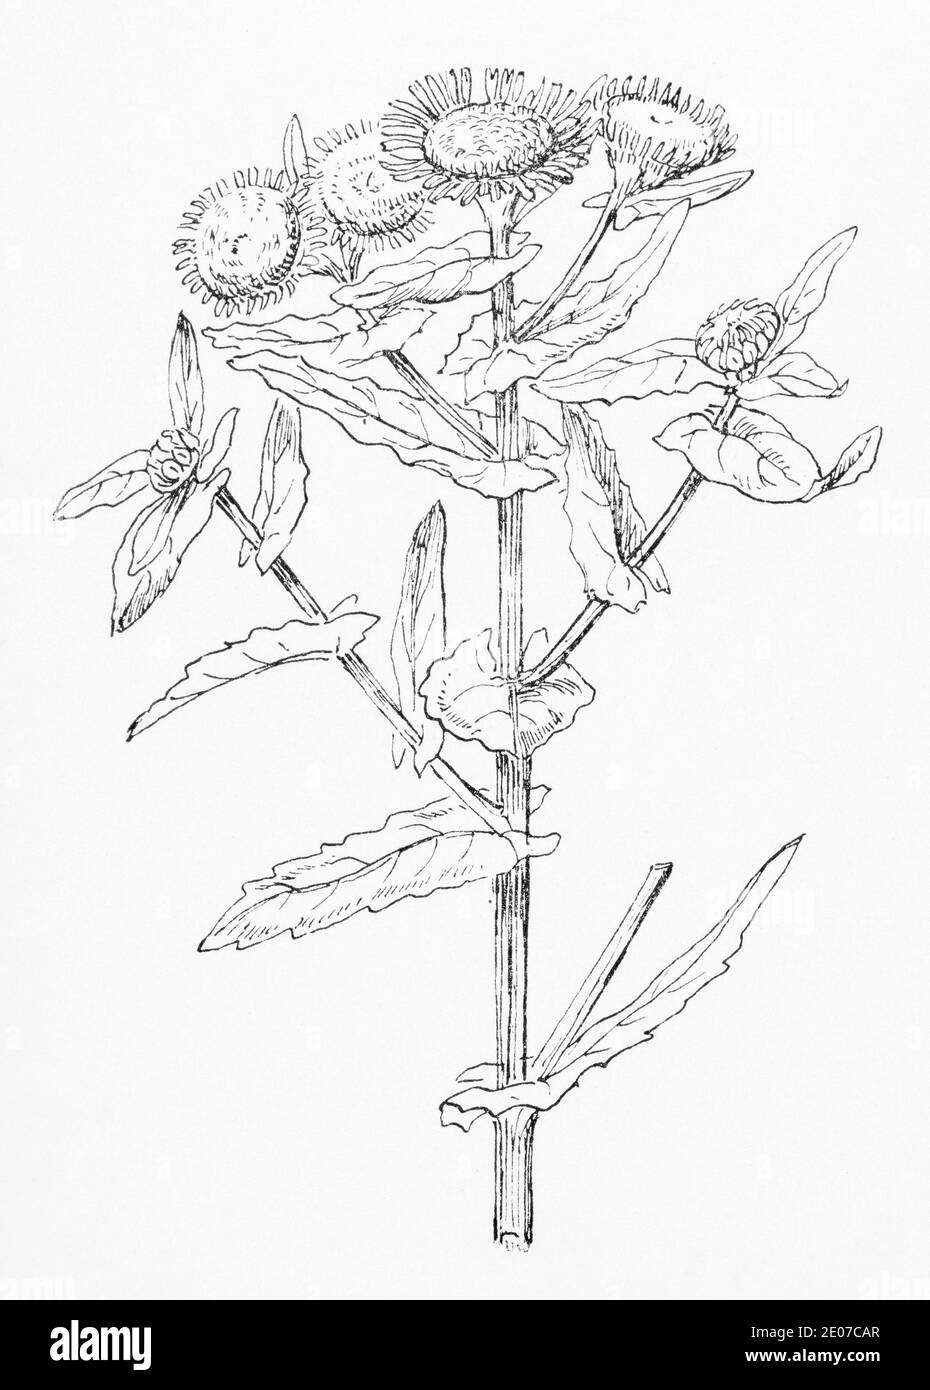 Alte botanische Illustration Gravur von Fleabane / Pulicaria dysenterica, Inula dysenterica. Traditionelle Heilkräuter Pflanze. Siehe Hinweise Stockfoto